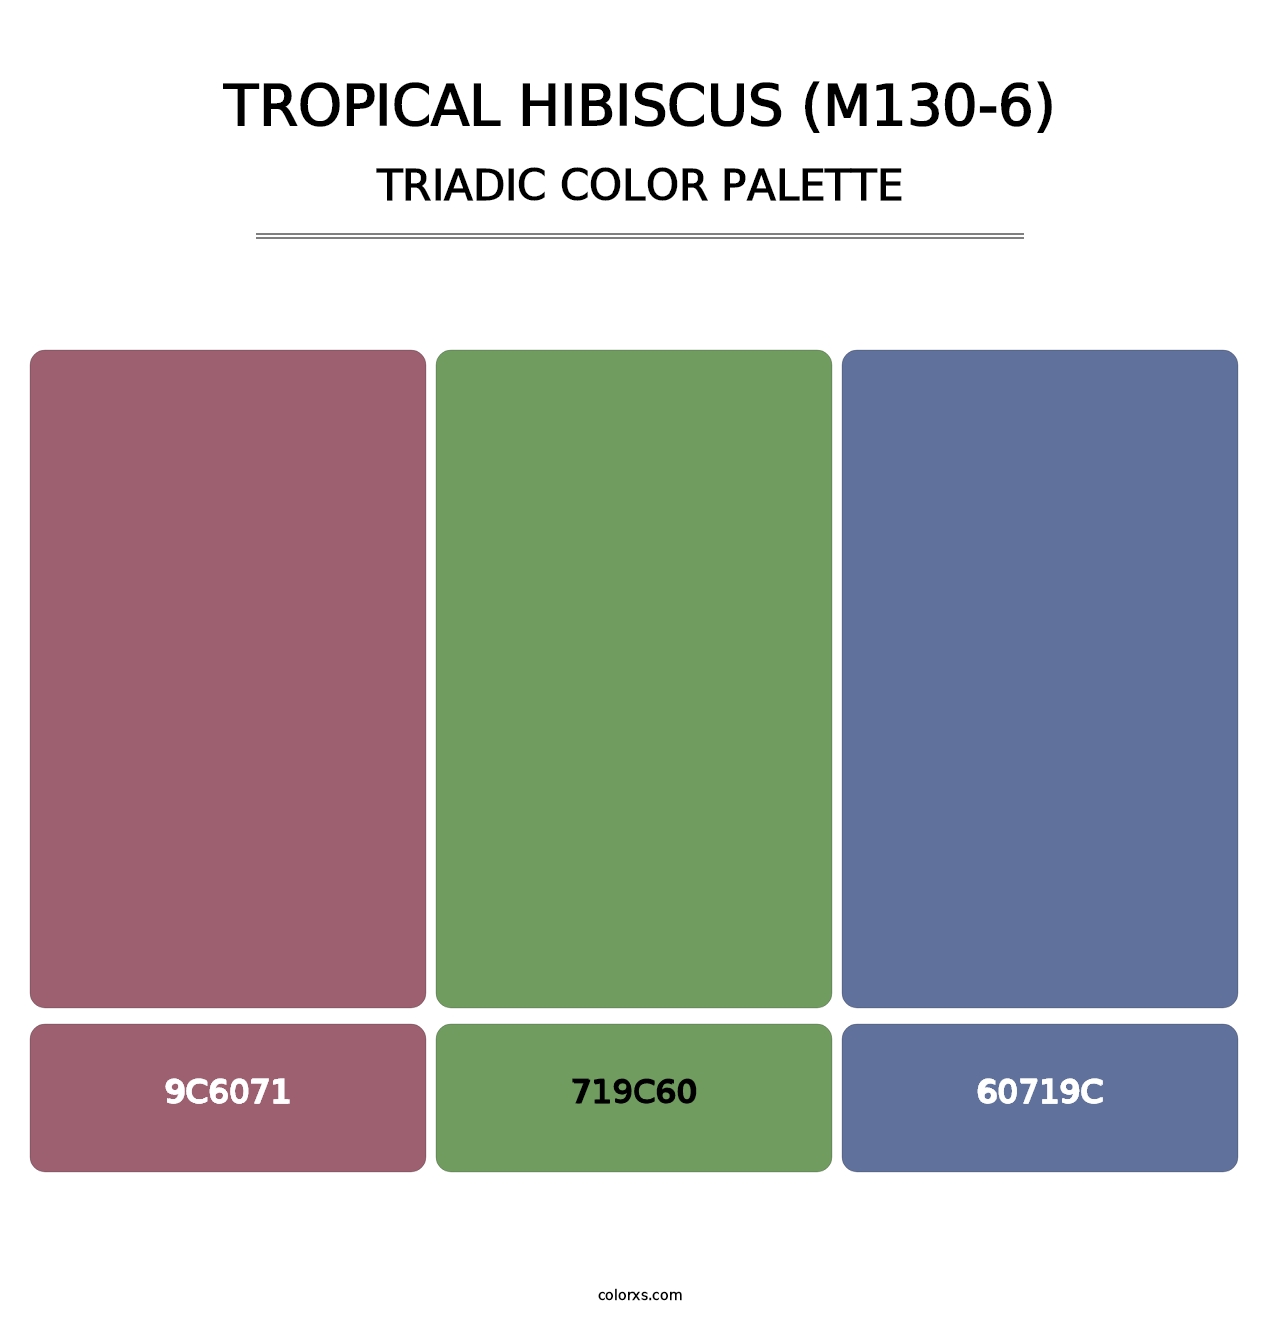 Tropical Hibiscus (M130-6) - Triadic Color Palette